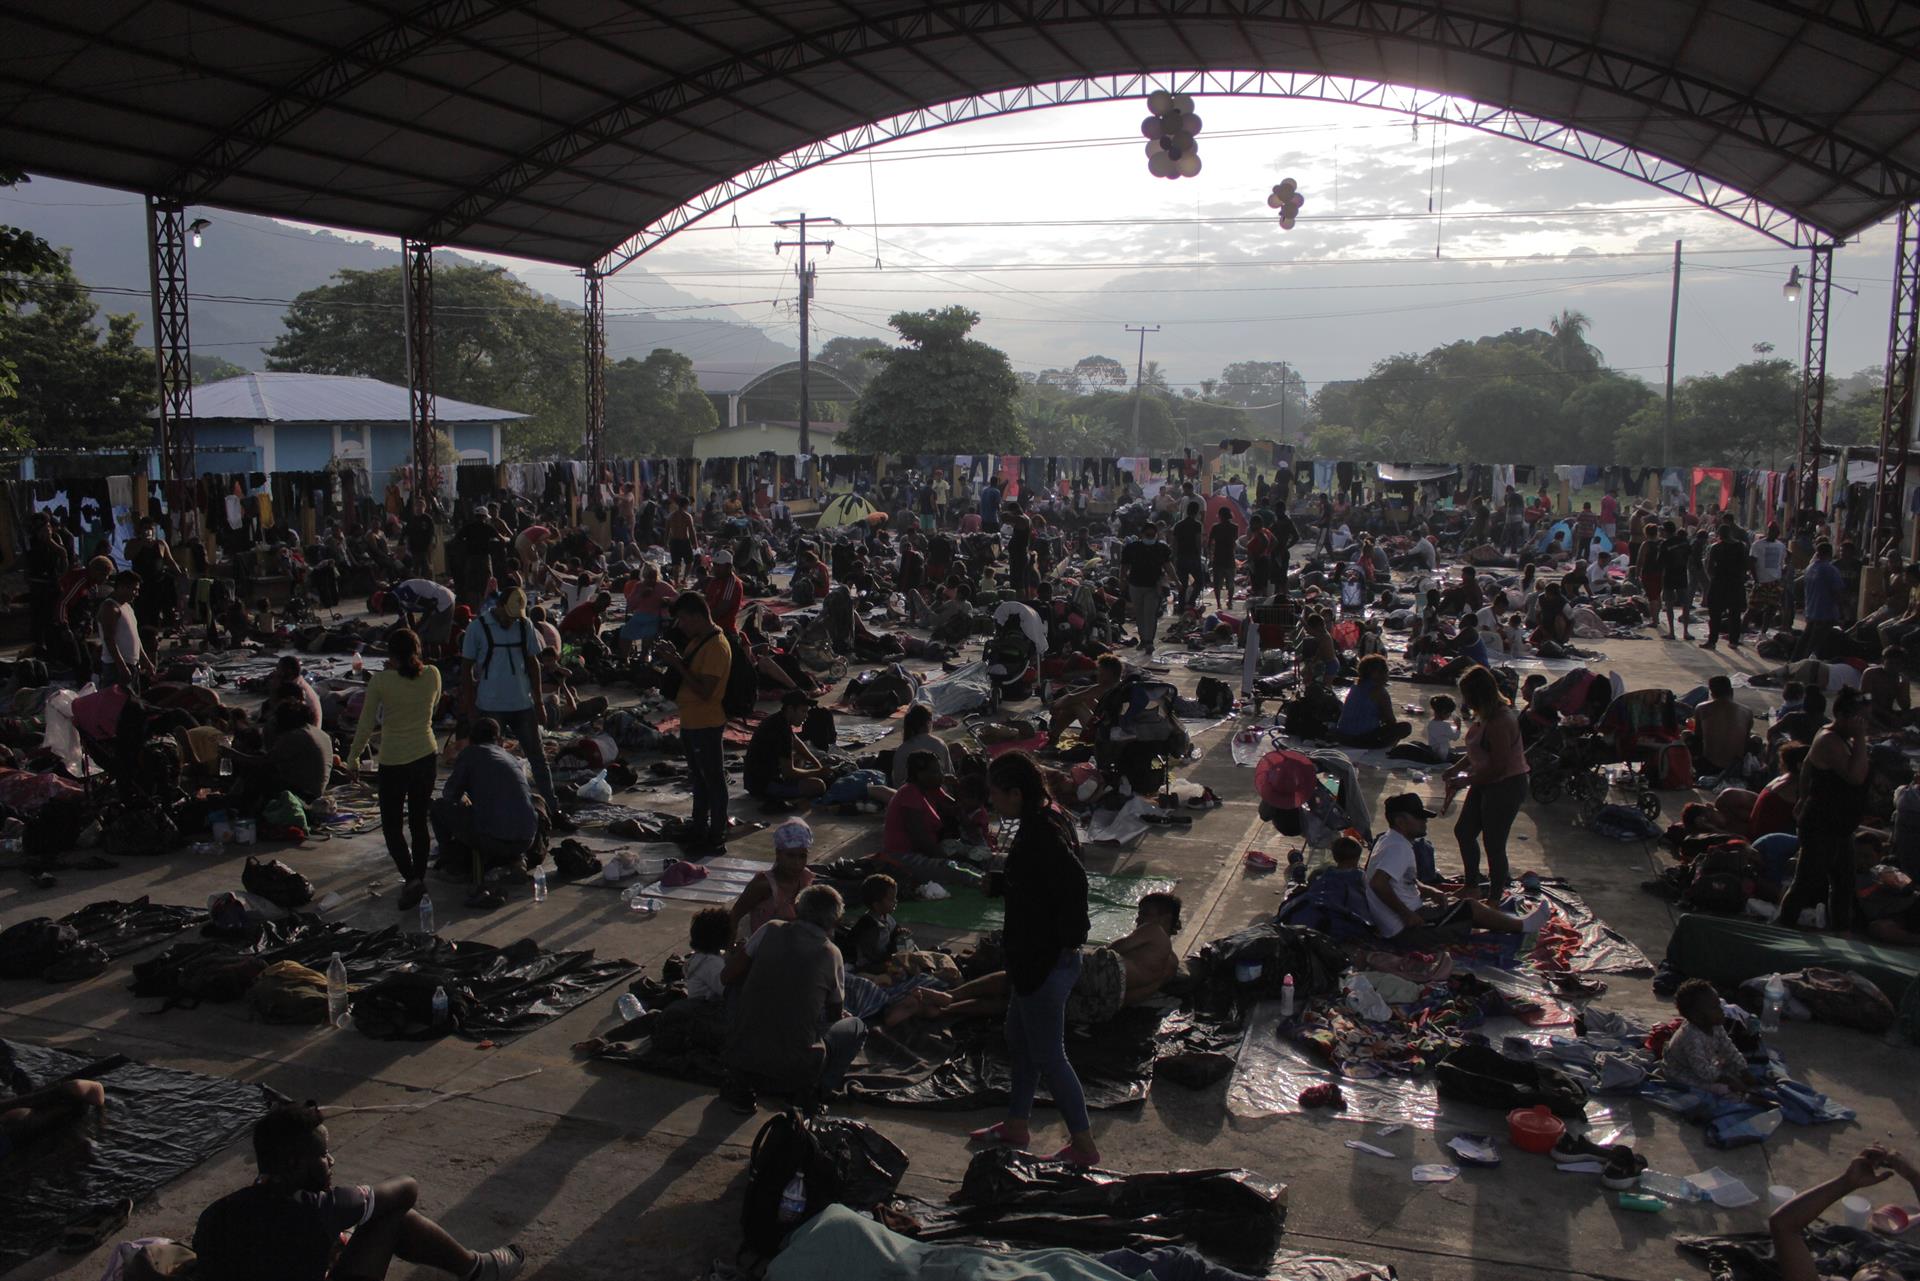 Los migrantes se mueven lentamente en el sur de México con salud en declive